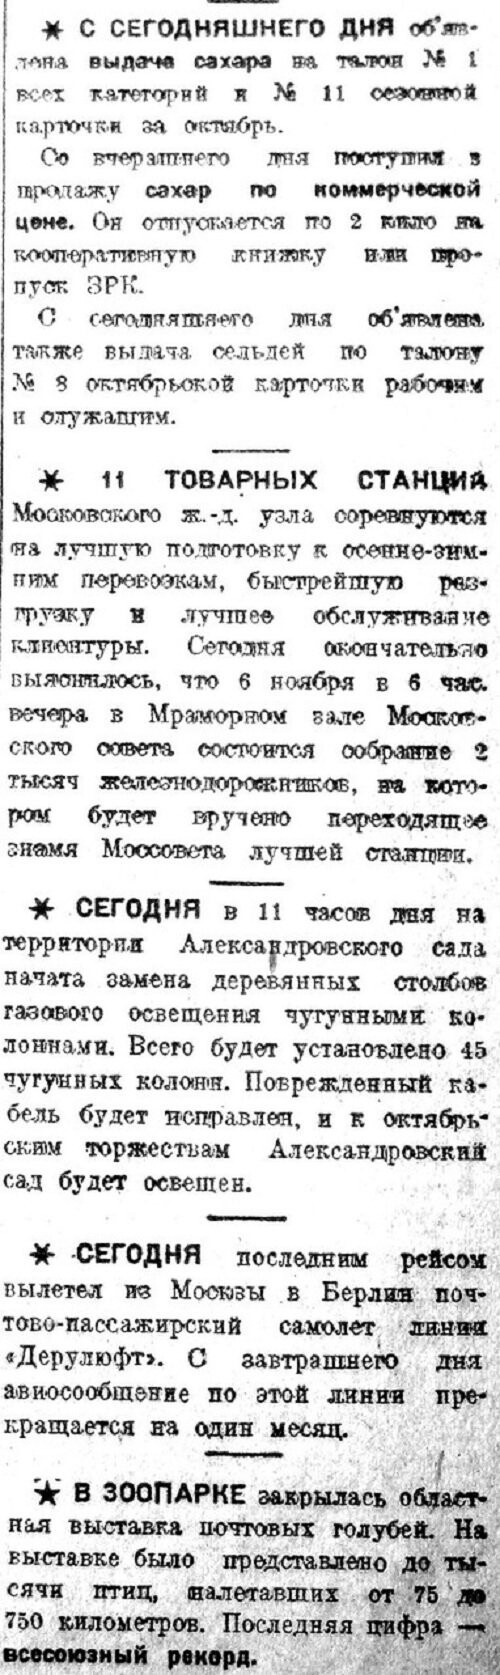 «Вечерняя Москва», 31 октября 1932 г.